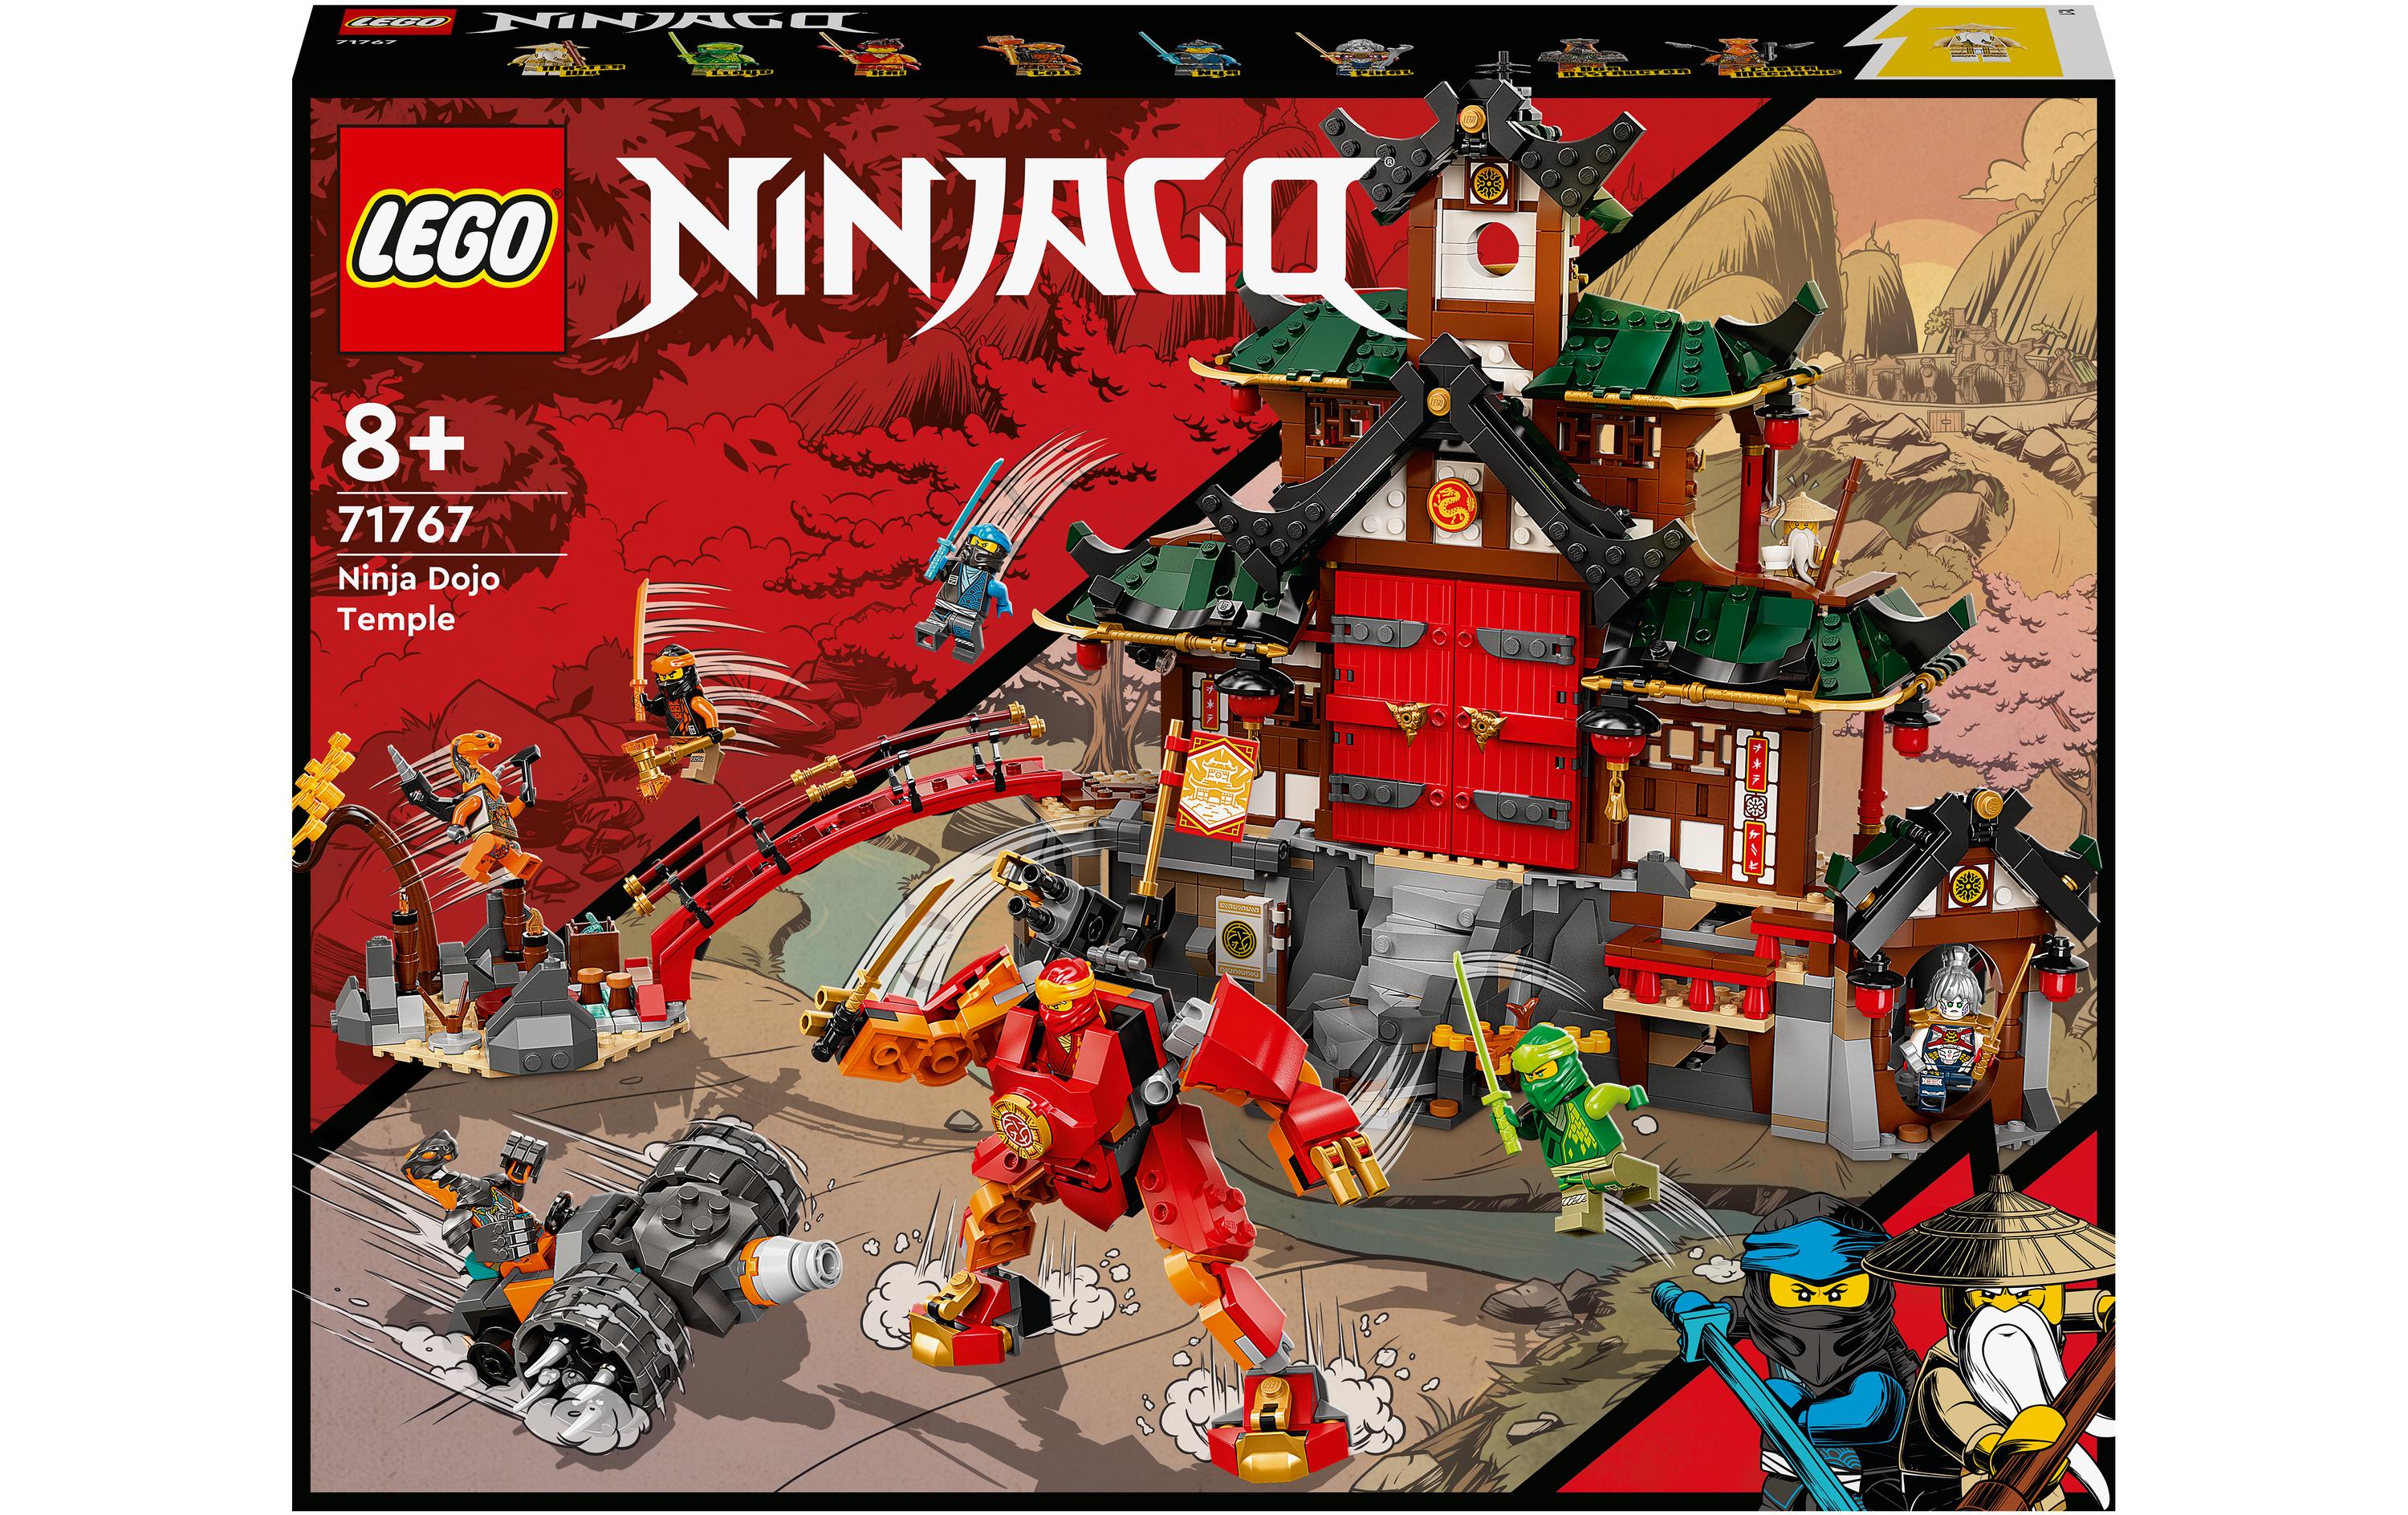 LEGO® Ninjago Ninja-Dojotempel 71767 - im GOLDSTIEN.SHOP verfügbar mit Gratisversand ab Schweizer Lager! (5702017151649)